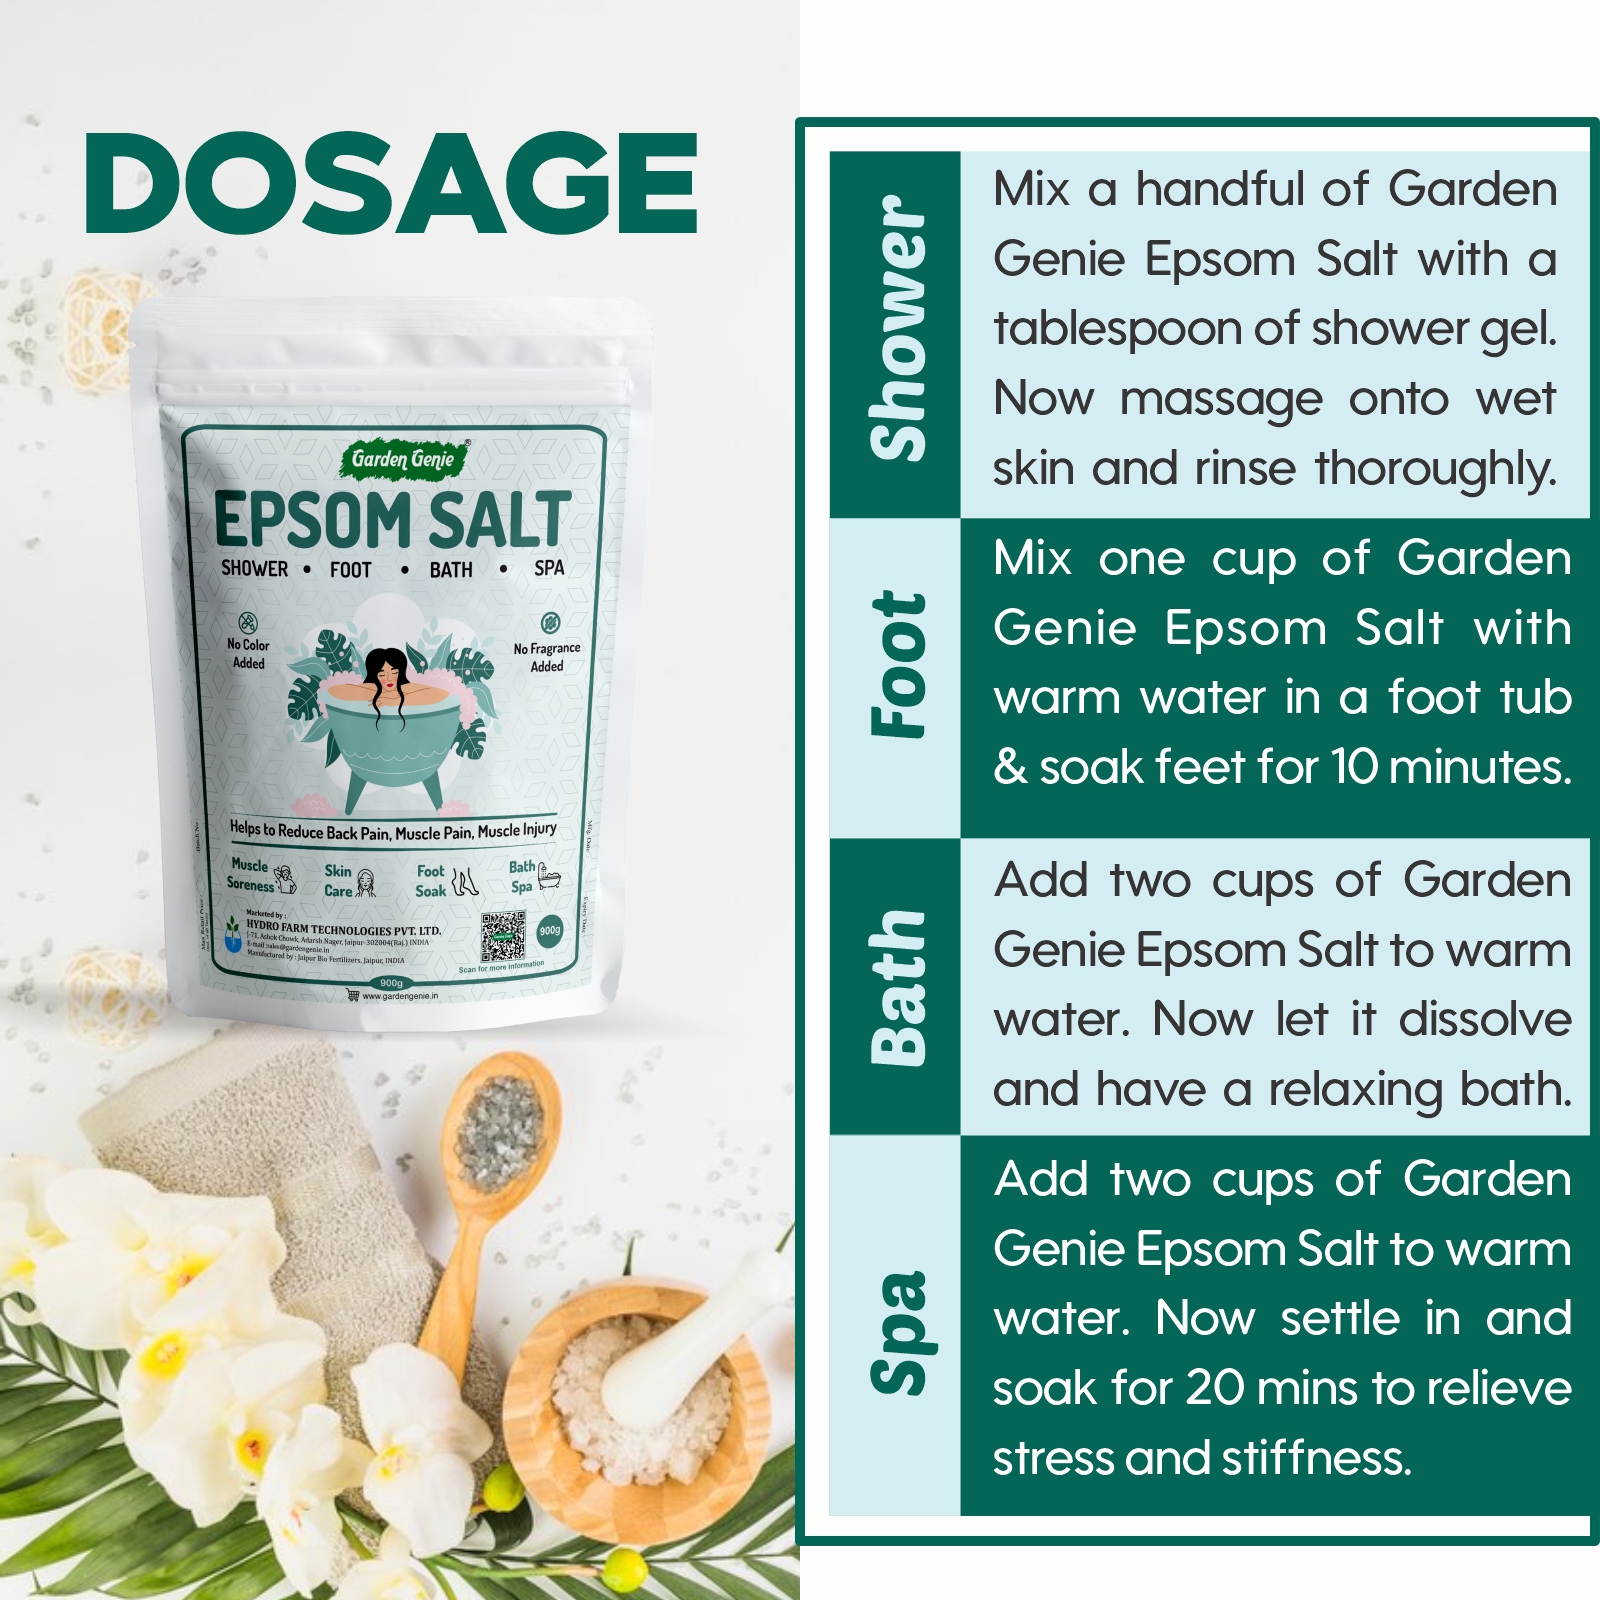 Dosage of Epsom Salt